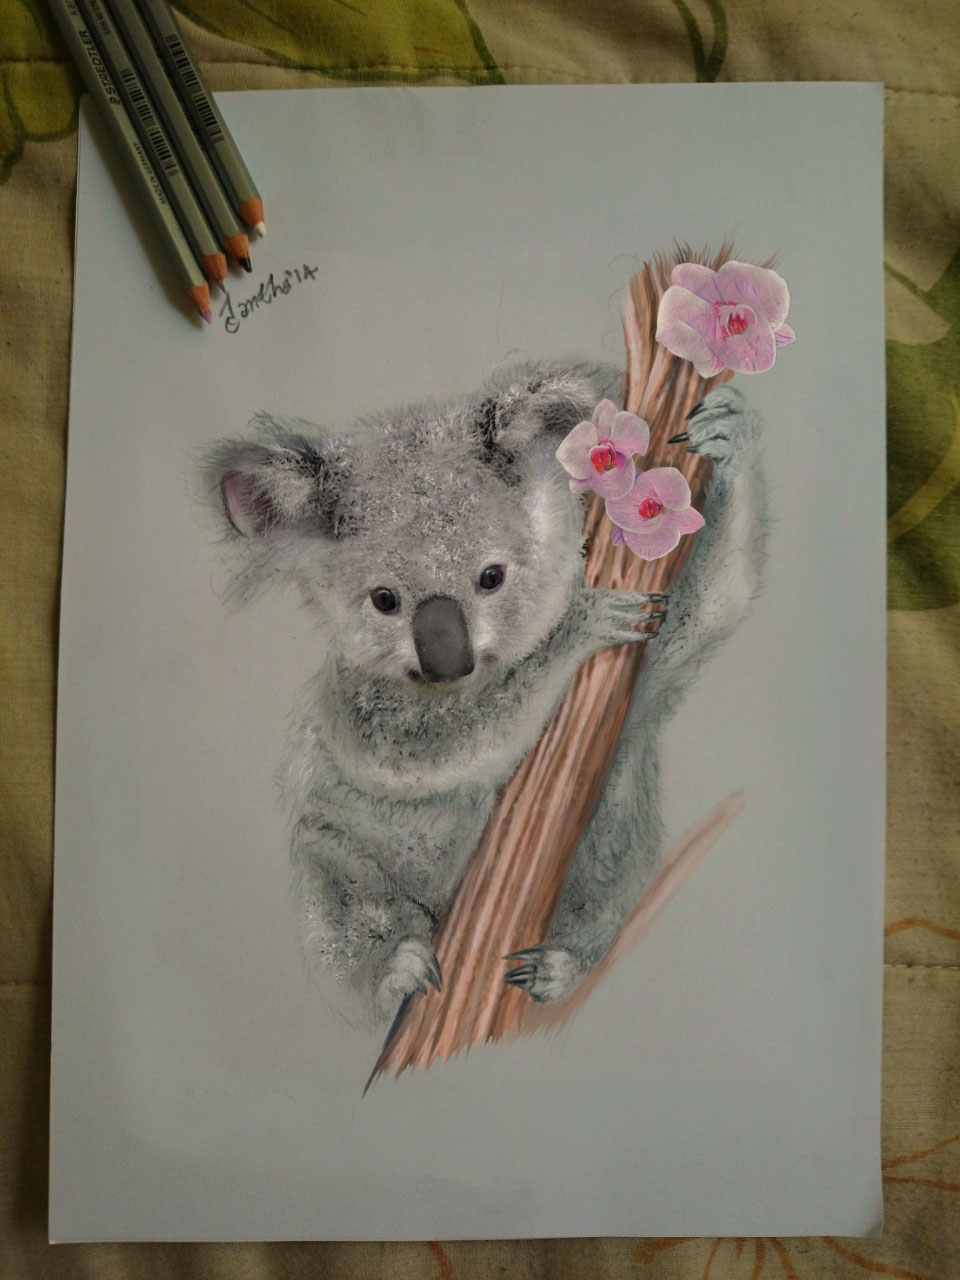 My drawing_ A koala awww by iangeliquein on DeviantArt